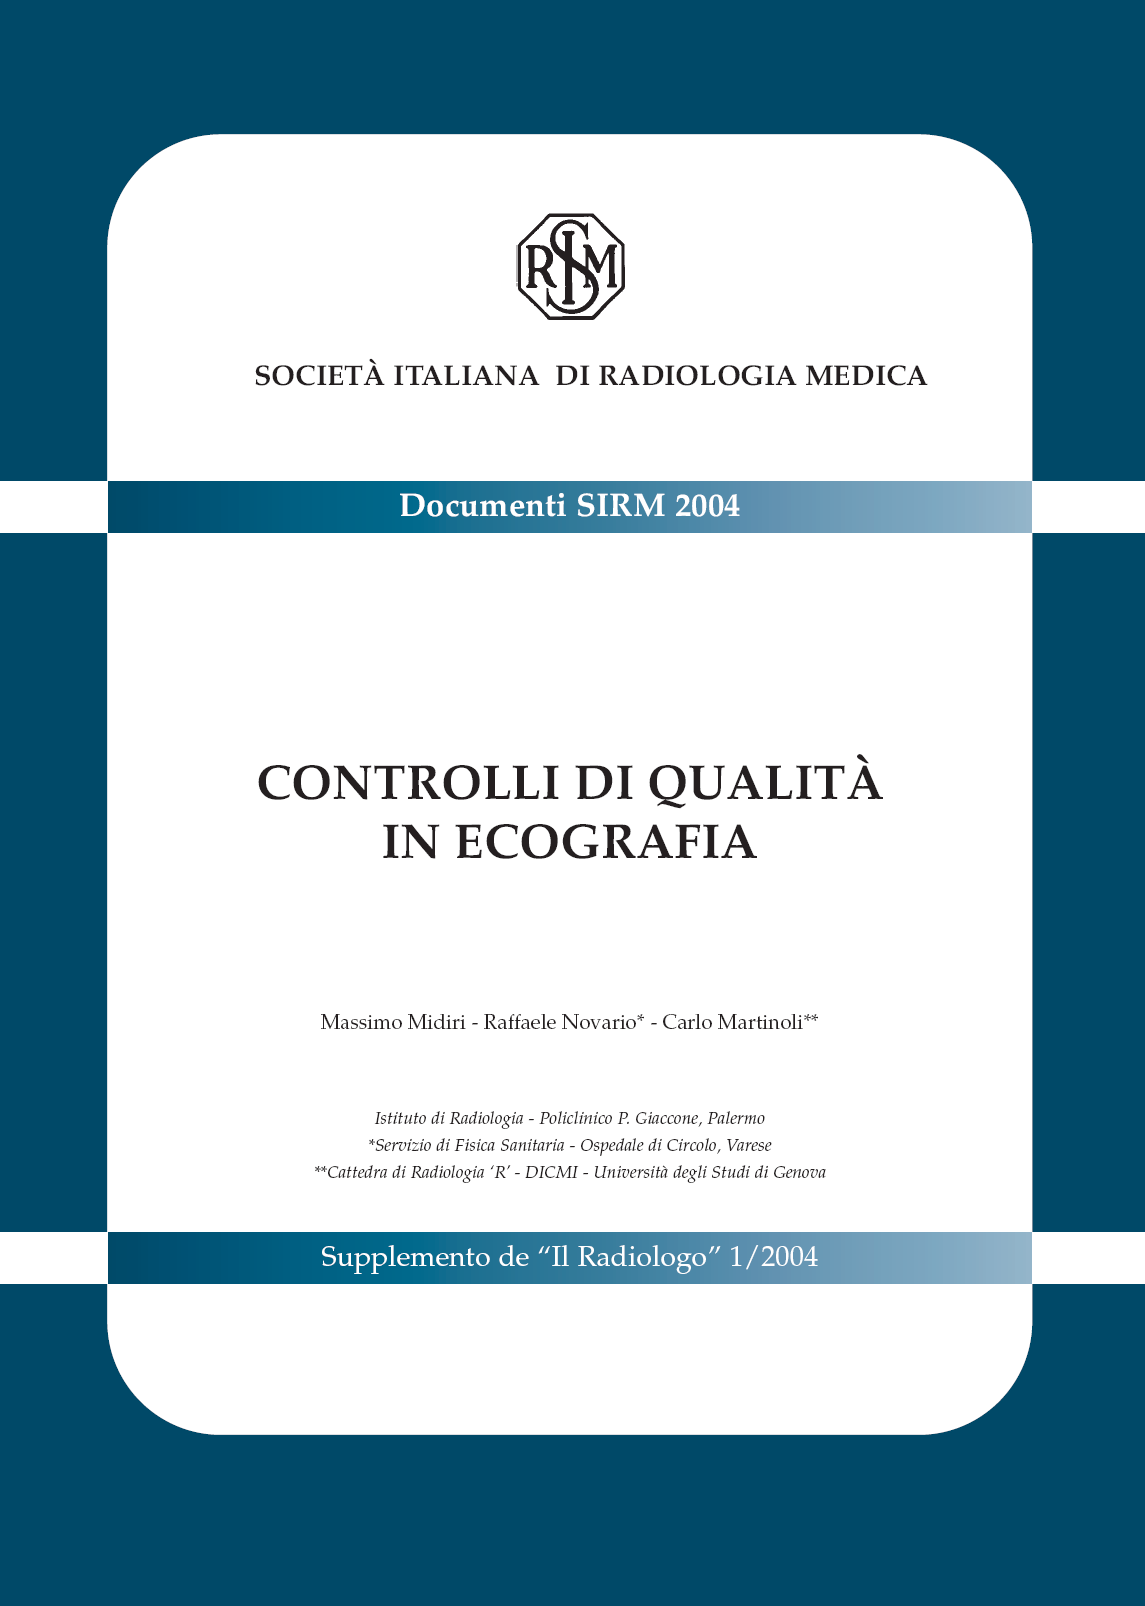 Nel 2004, poi, la SIRM, Società Italiana di Radiologia Medica, ha pubblicato un documento, dal titolo Controlli di qualità in ecografia, che fa il punto sulle